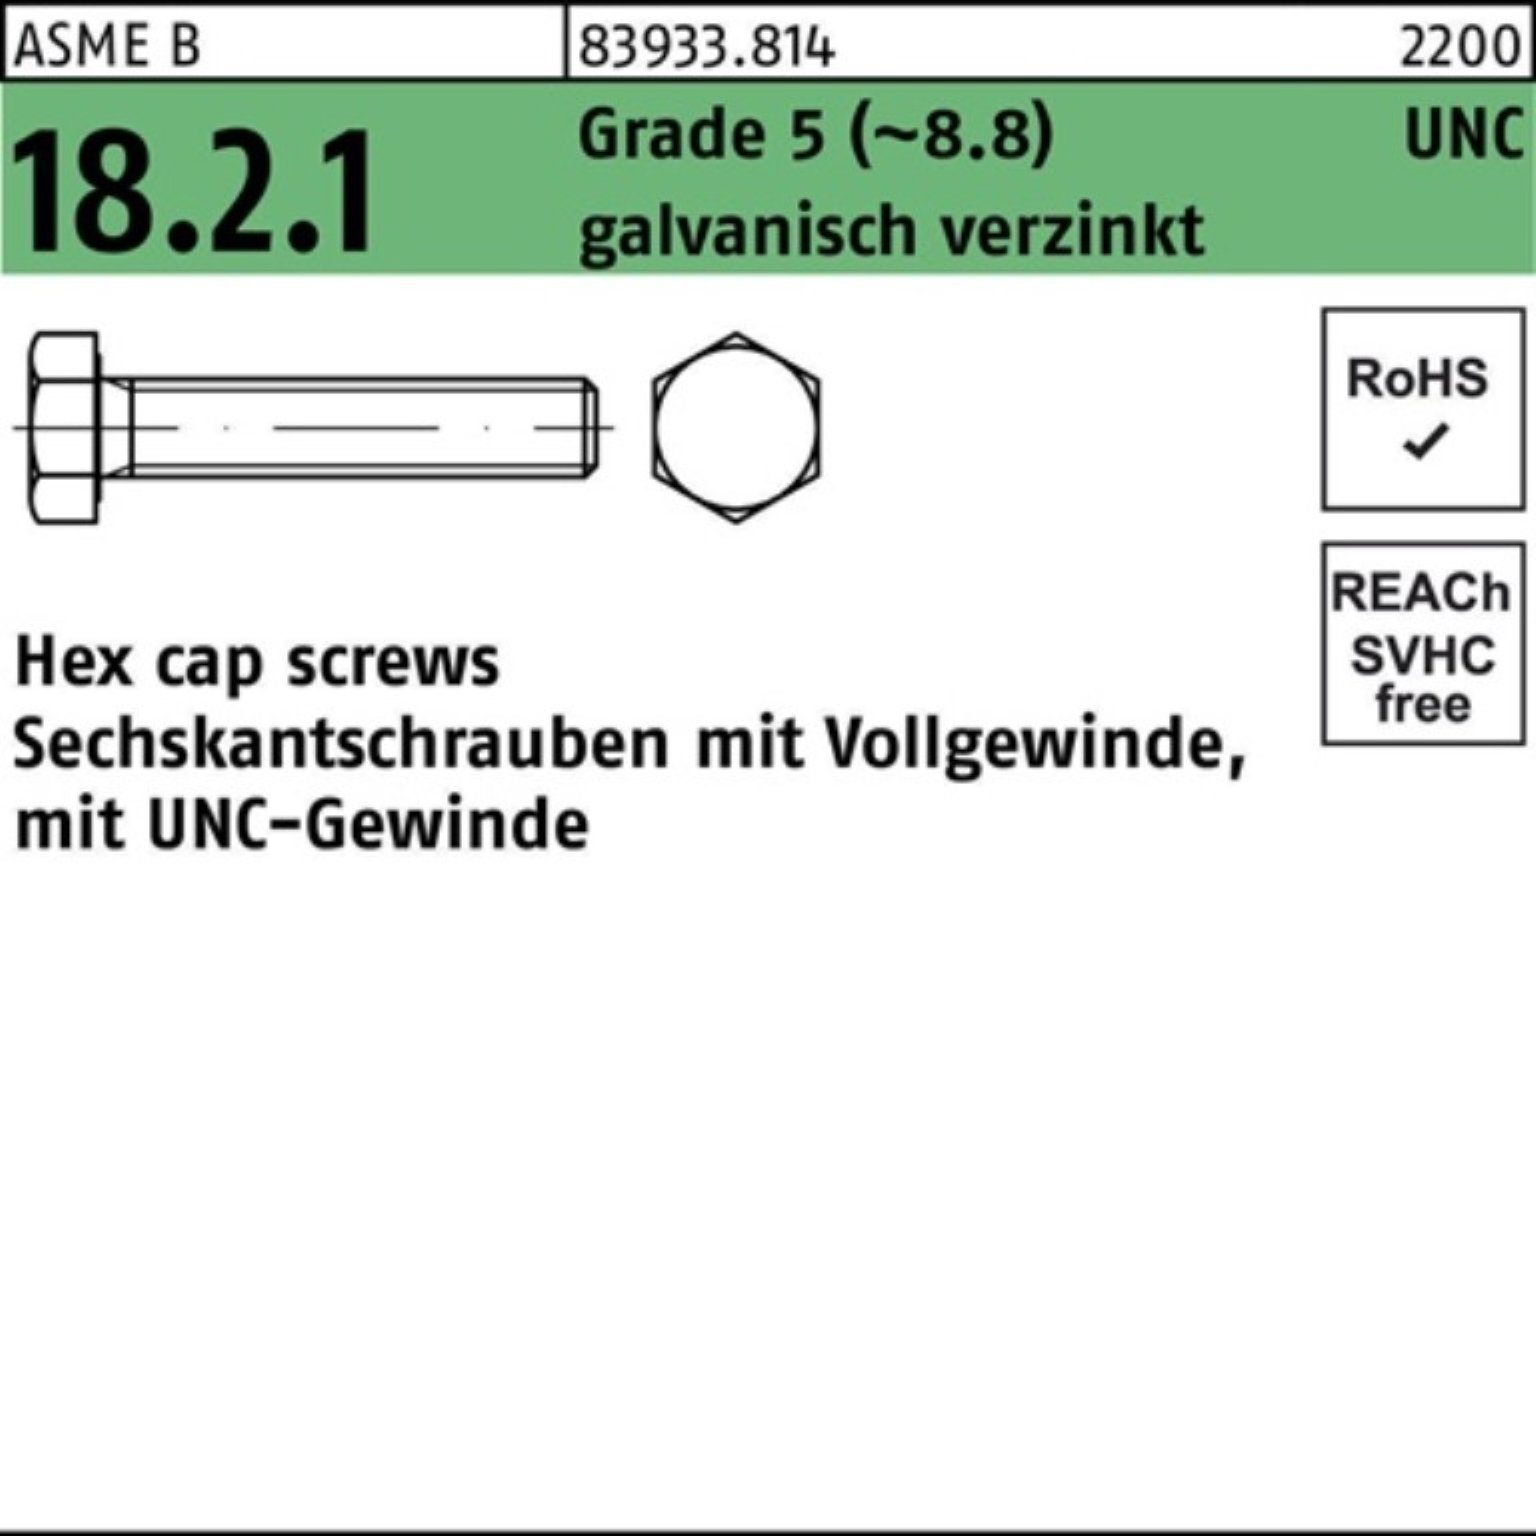 Reyher Sechskantschraube 100er Pack Sechskantschraube R 83933 UNC VG 3/8x3/4 Grade 5 (8.8) gal